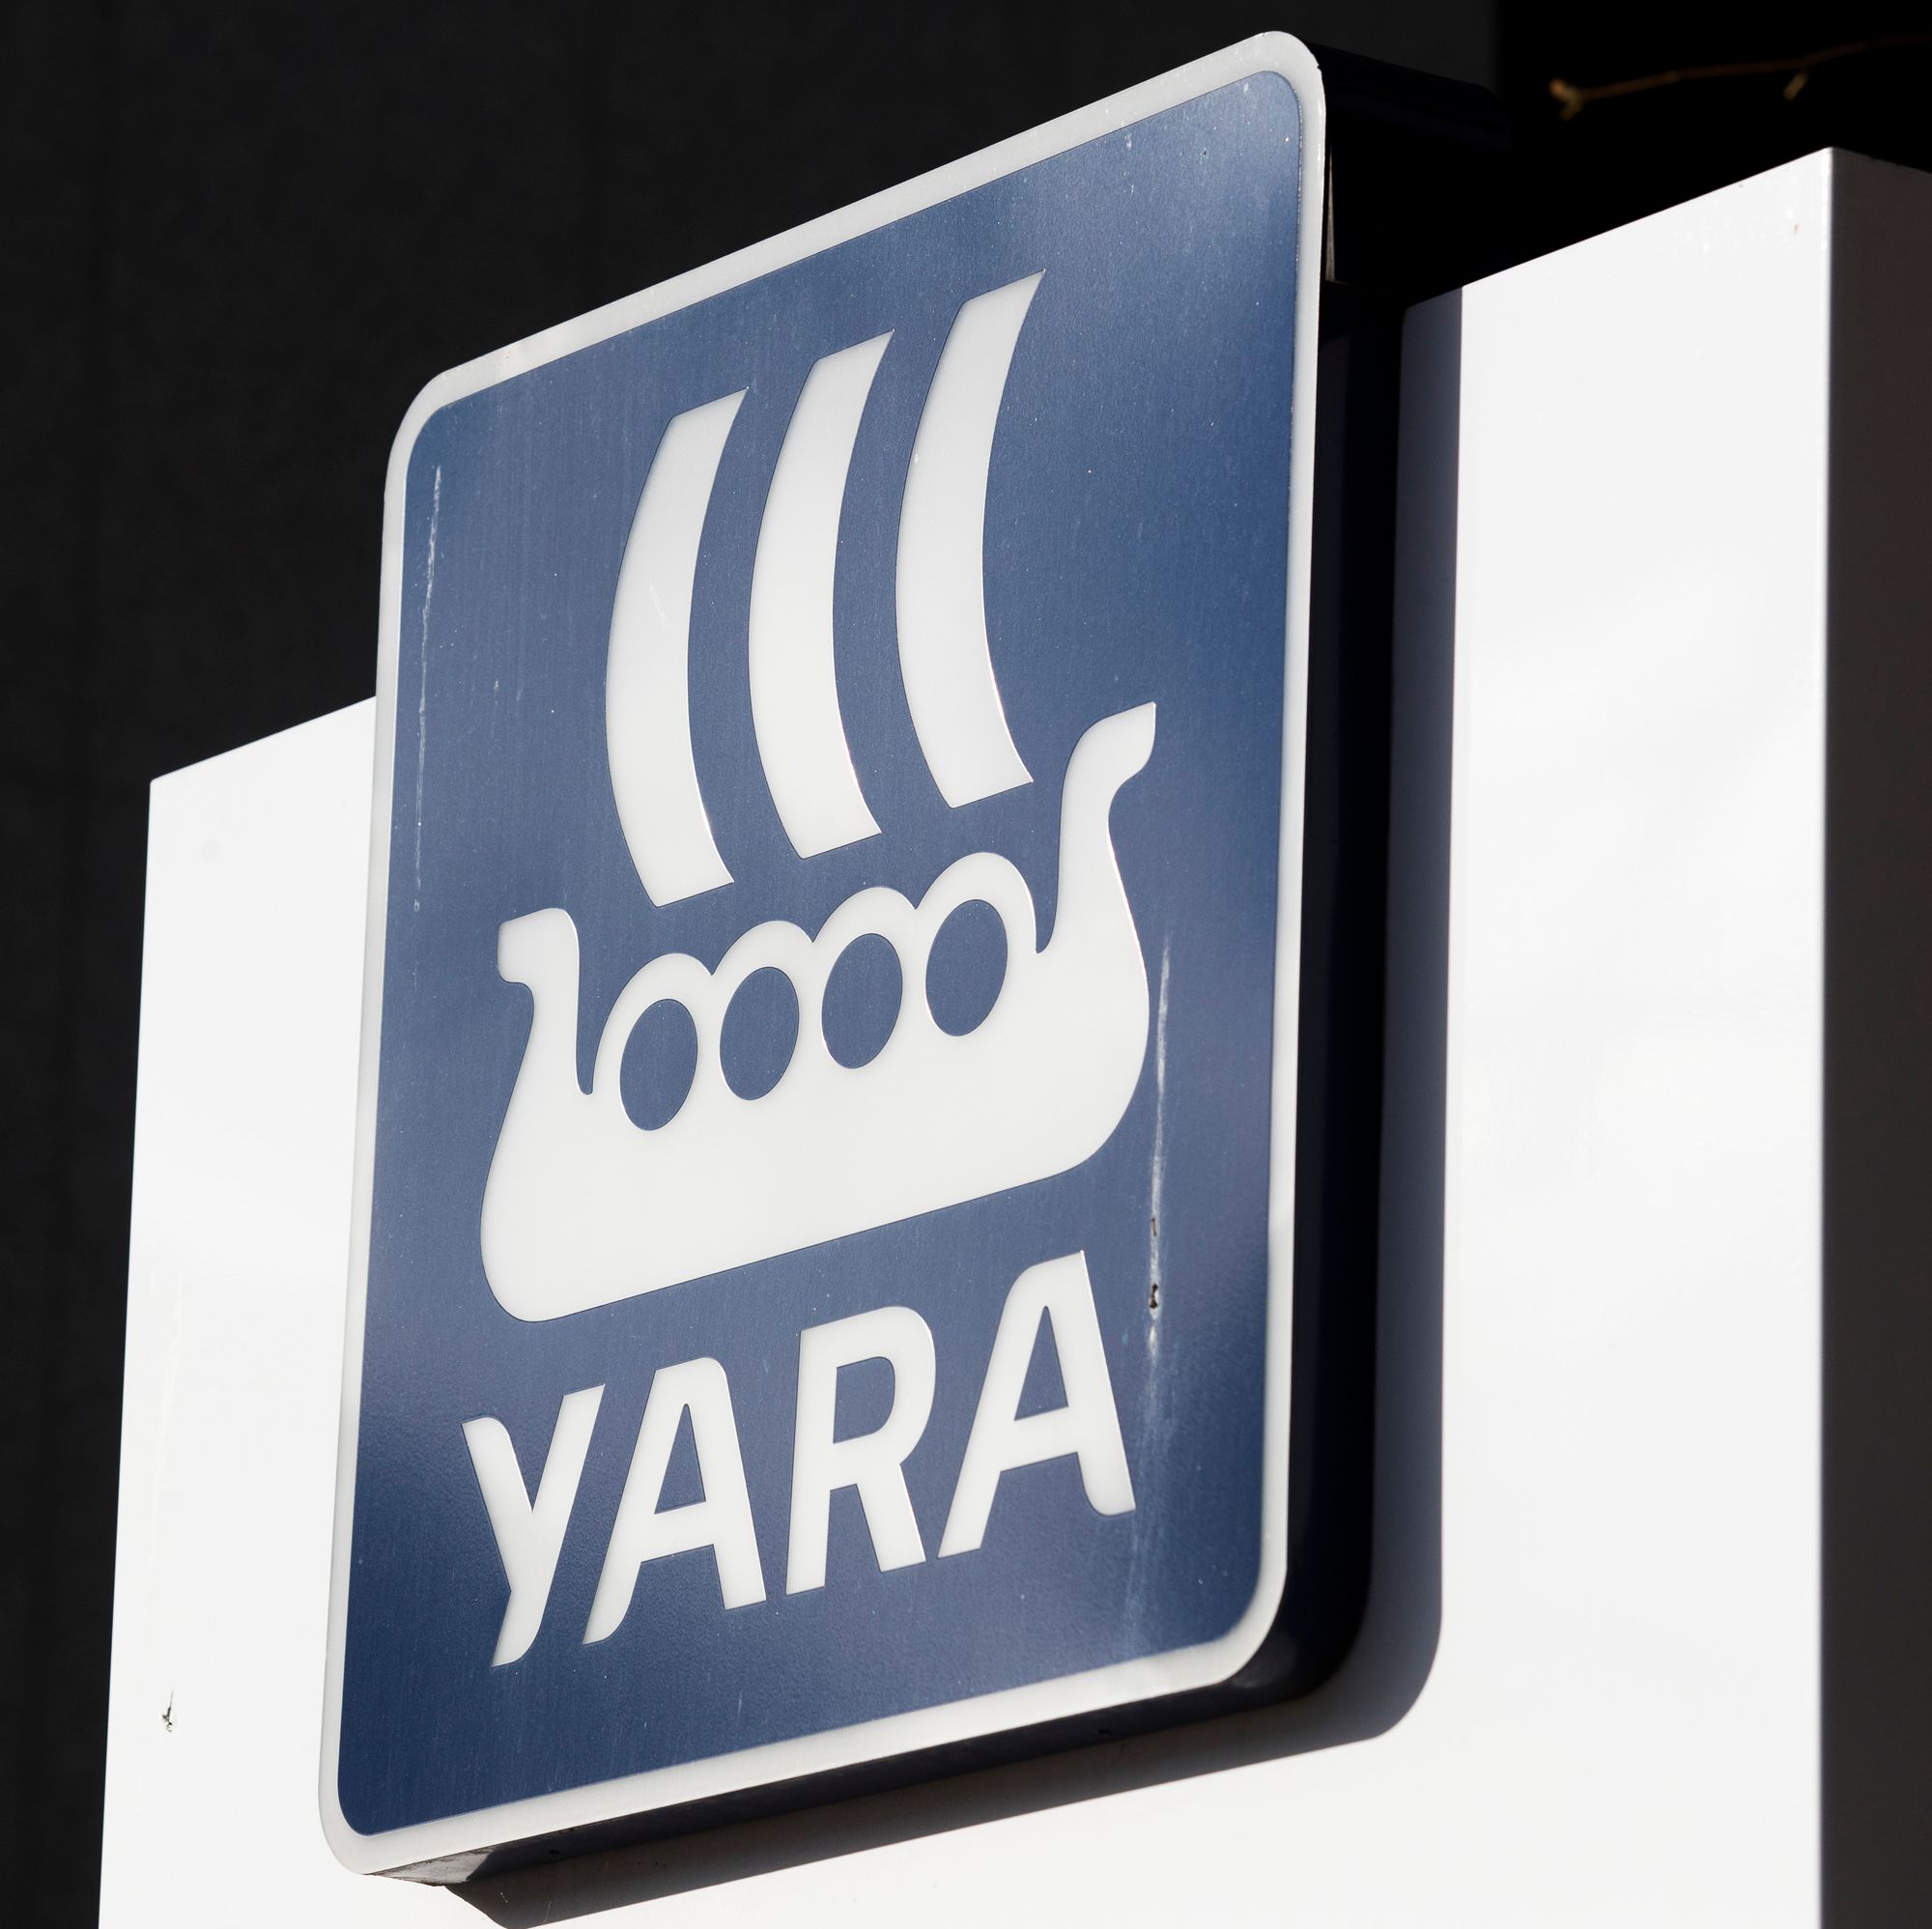 Ammoniakk-lekkasje ved Yara-anlegg i Finland 